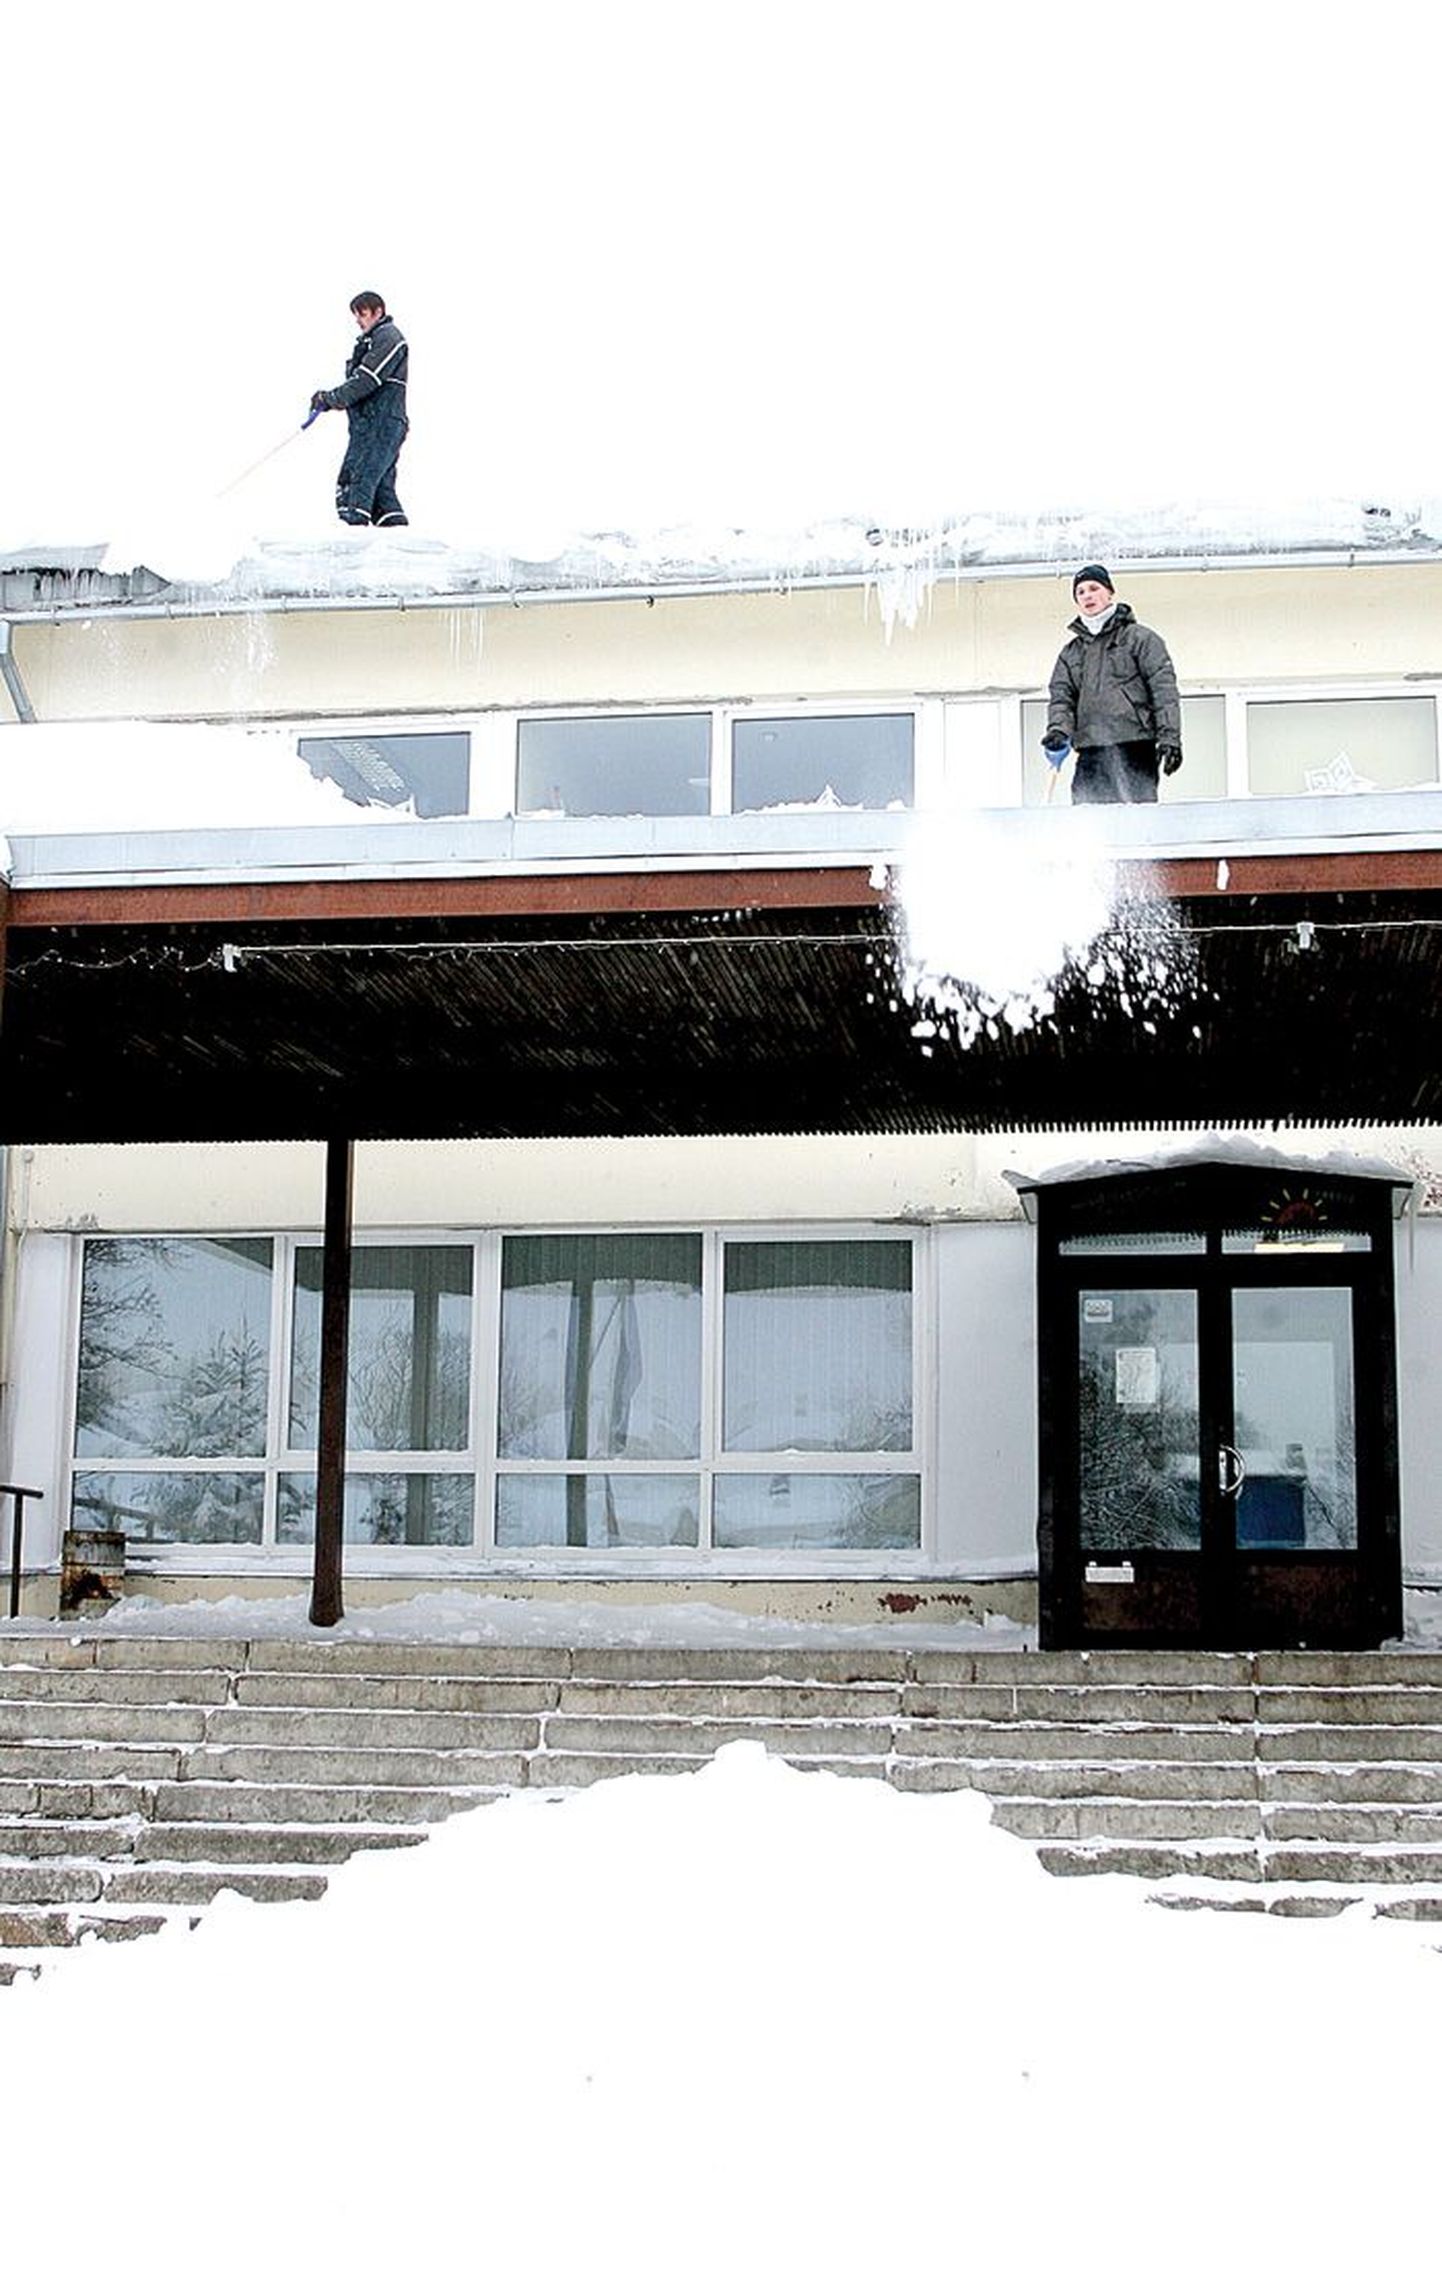 Raatuse gümnaasium lasi katuselt lume eemal dada, et ei tekiks jääpurikaid ning laste koolitee oleks turvaline.